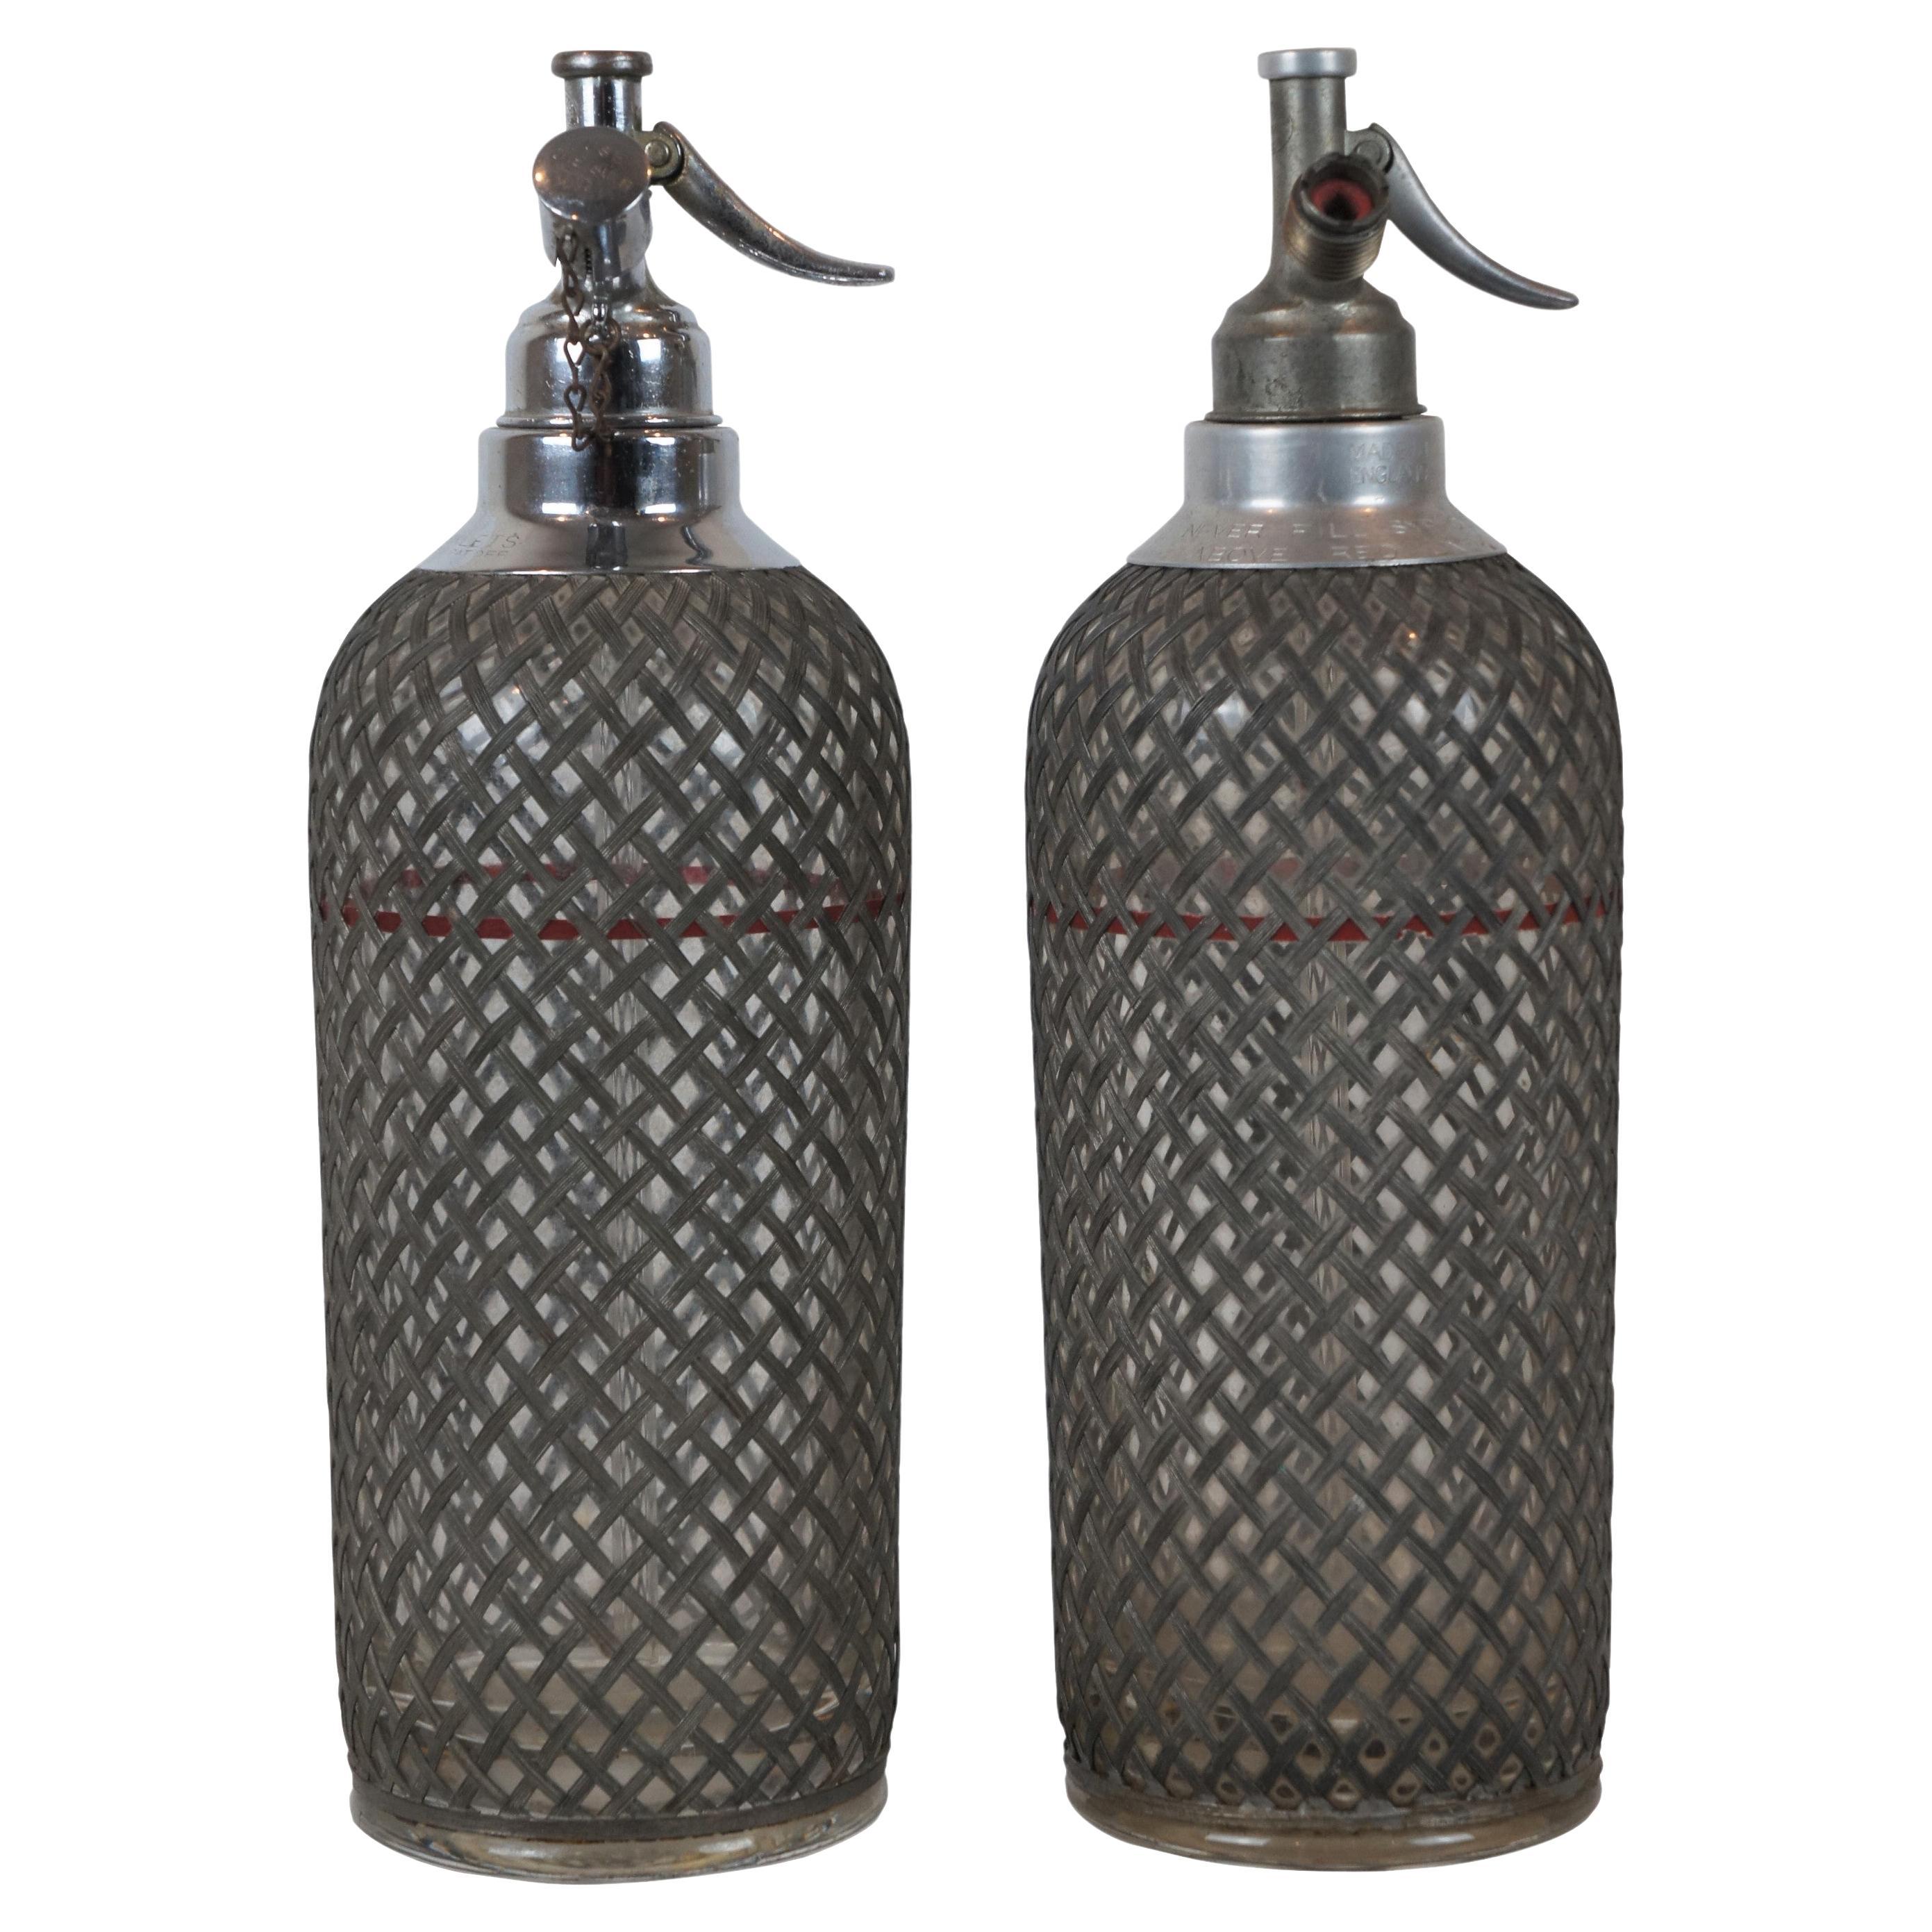 2 Antique Art Deco Sparklets Seltzer Bottles Mesh Wire Siphon Syphon Barware